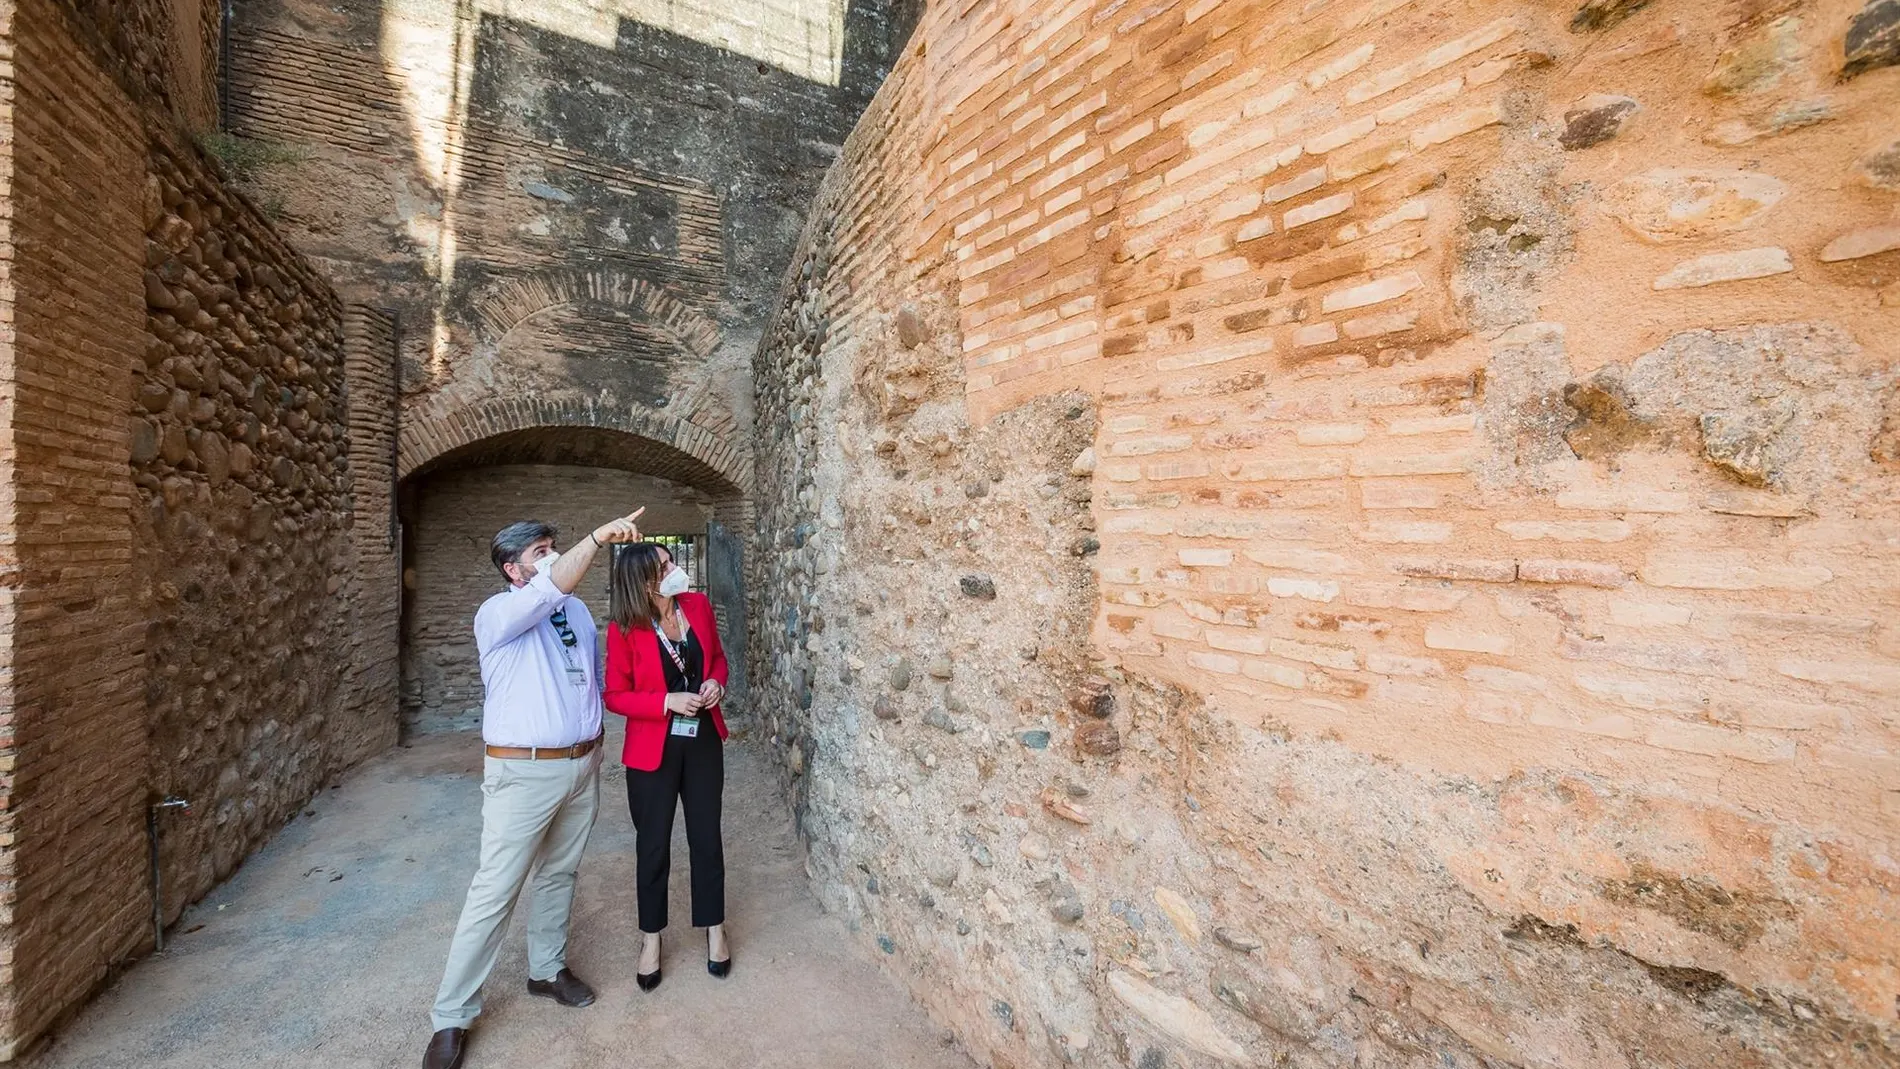 La directora general del Patronato de la Alhambra y Generalife, Rocío Díaz, durante una visita a la torre, junto al arquitecto conservador del monumento, Antonio Peral